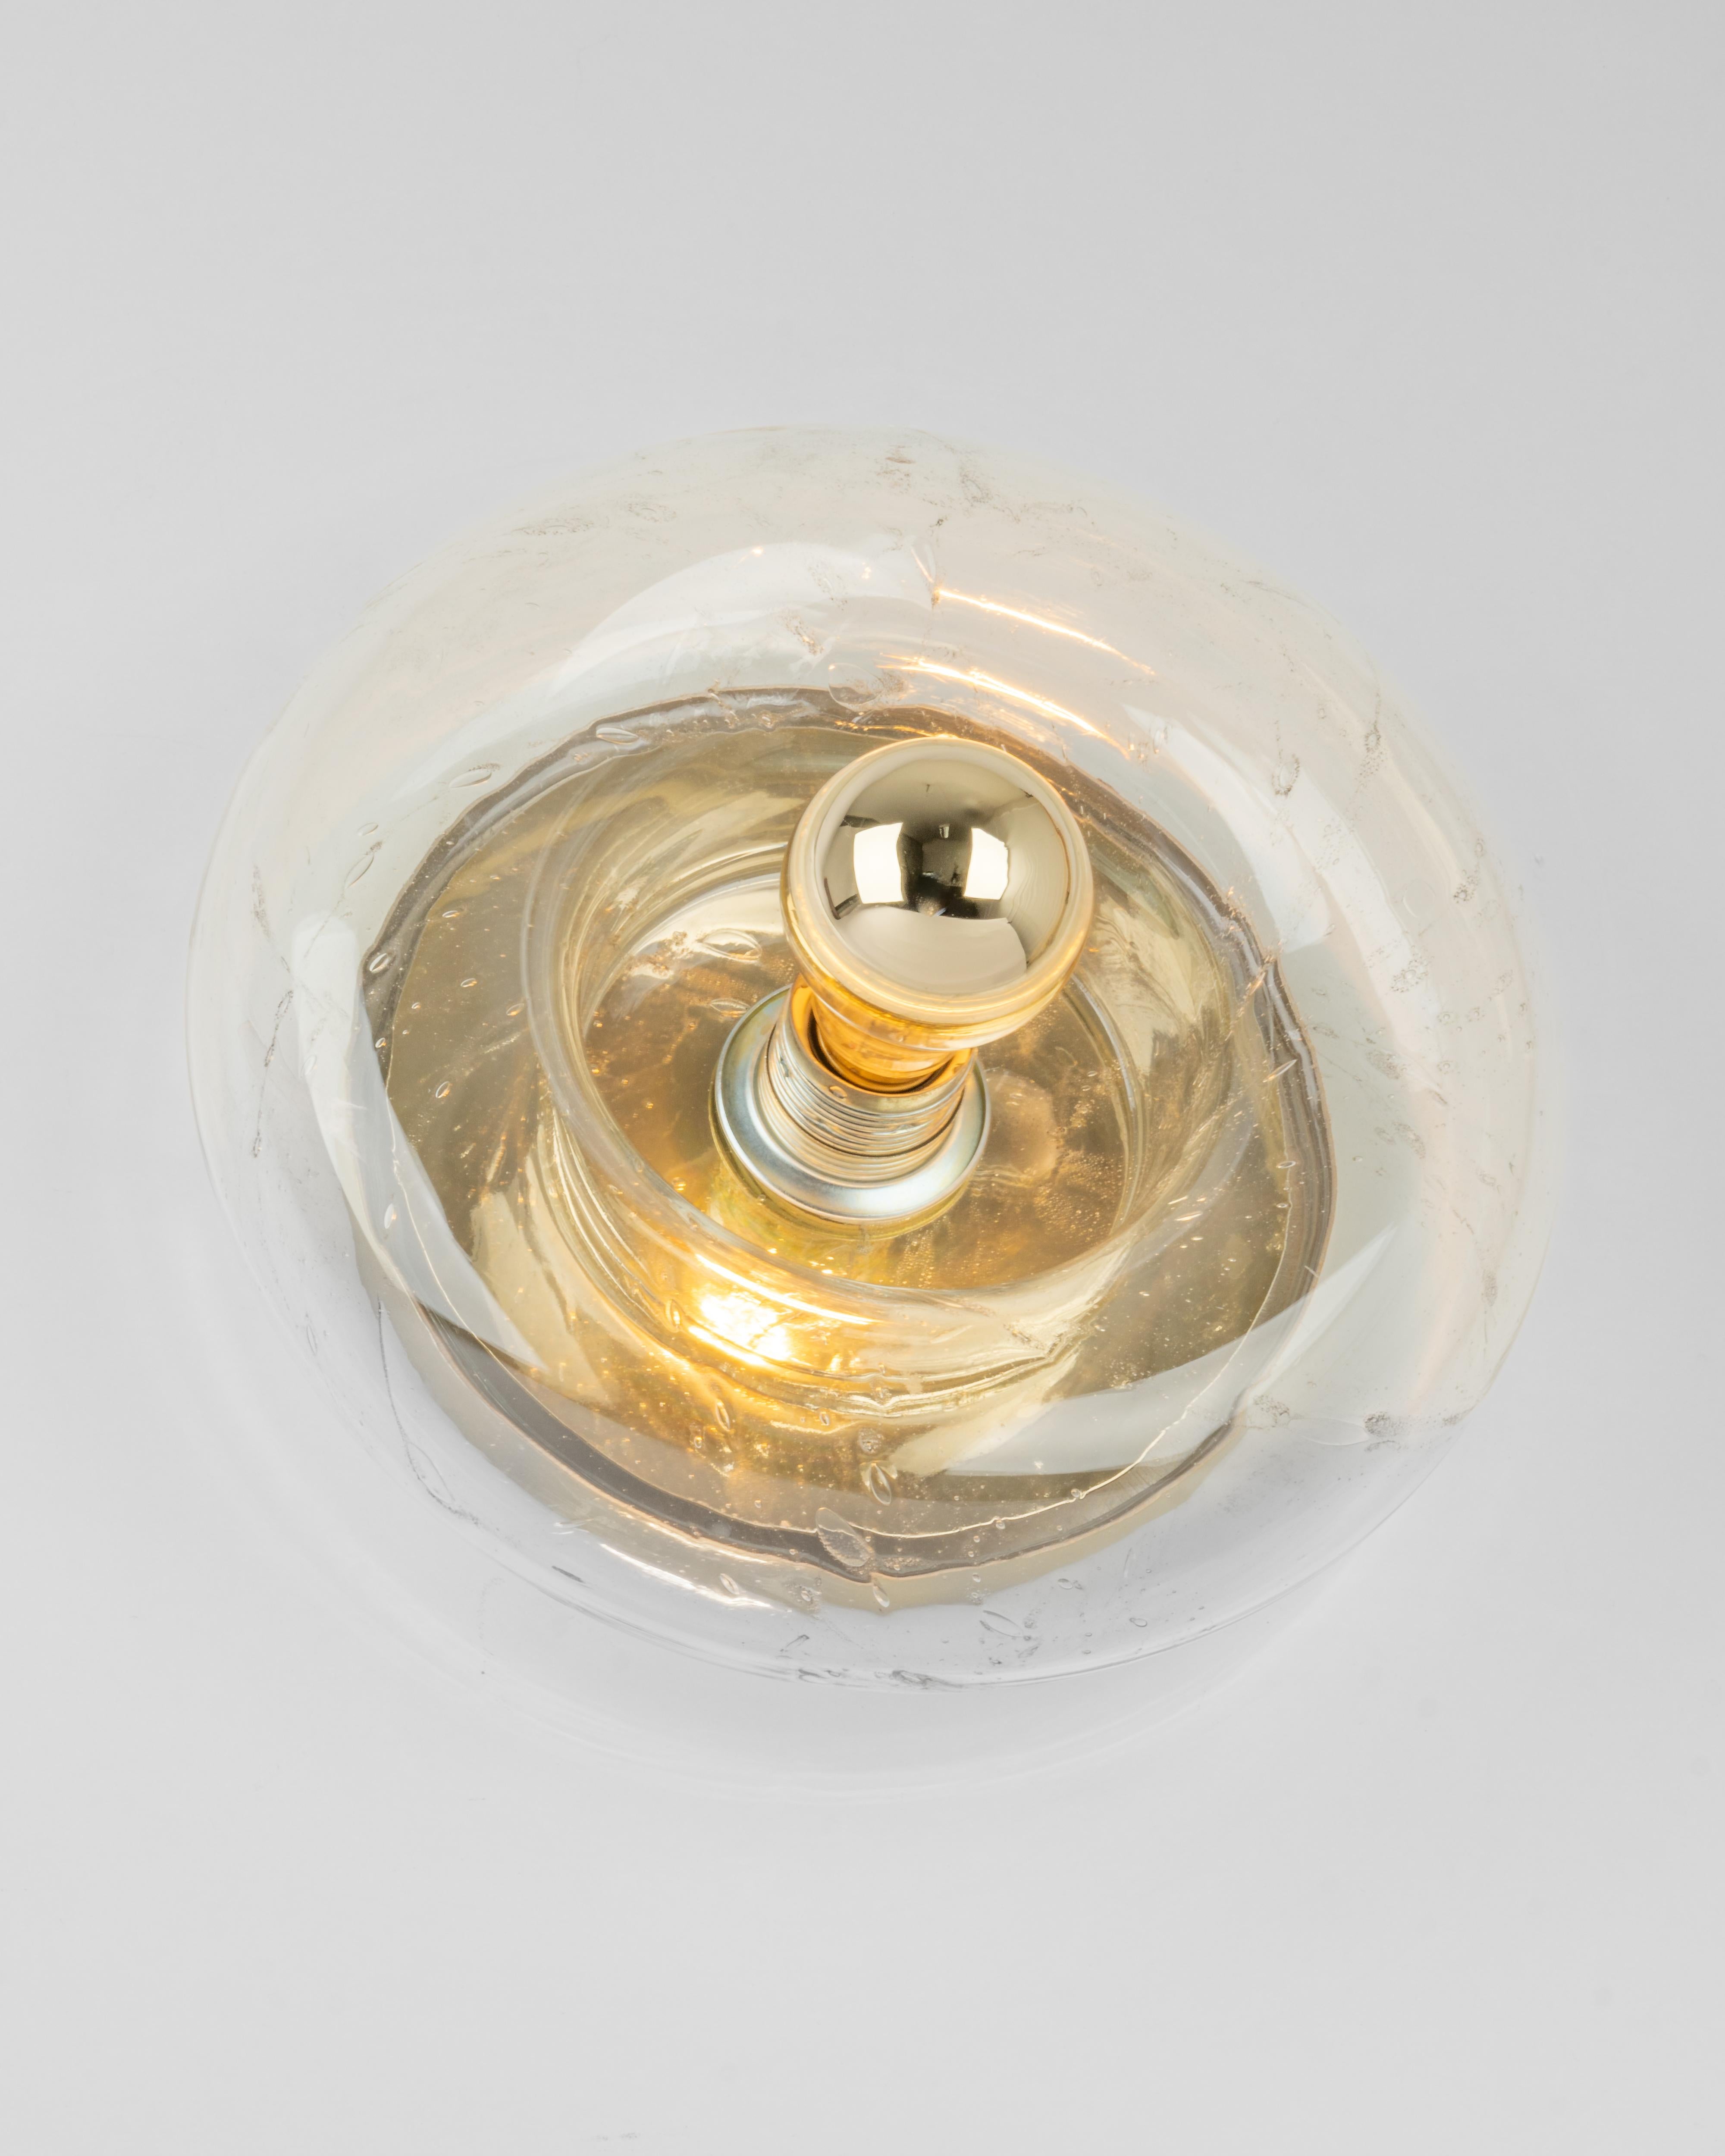 1 von 6 speziellen runden biomorphen Wandleuchten aus klarem Murano-Glas in Doughnut-Form, entworfen von Doria Leuchten, Deutschland, hergestellt um 1960-1969.
Hohe Qualität, guter Zustand.
Sehr schöner Lichteffekt.
Gereinigt, gut verkabelt und